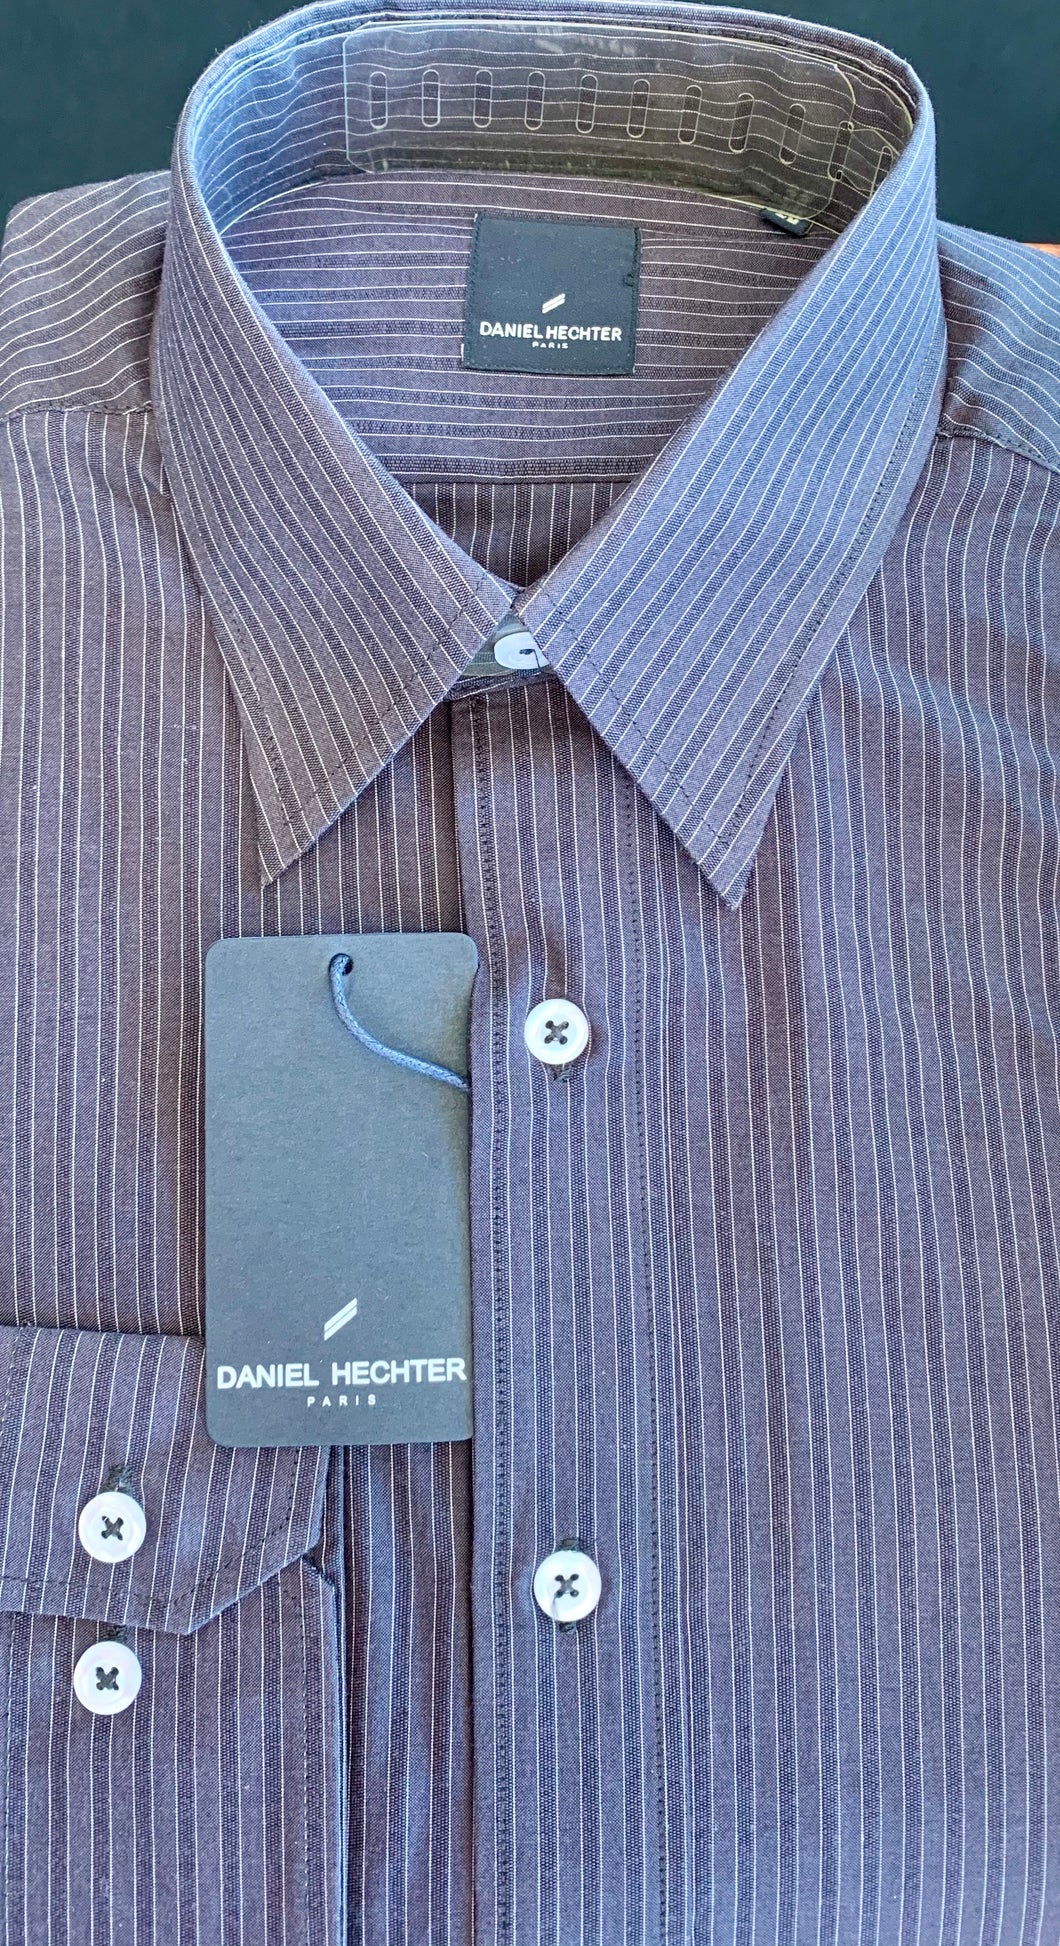 Daniel Hechter Shirt Charcoal/pin stripes